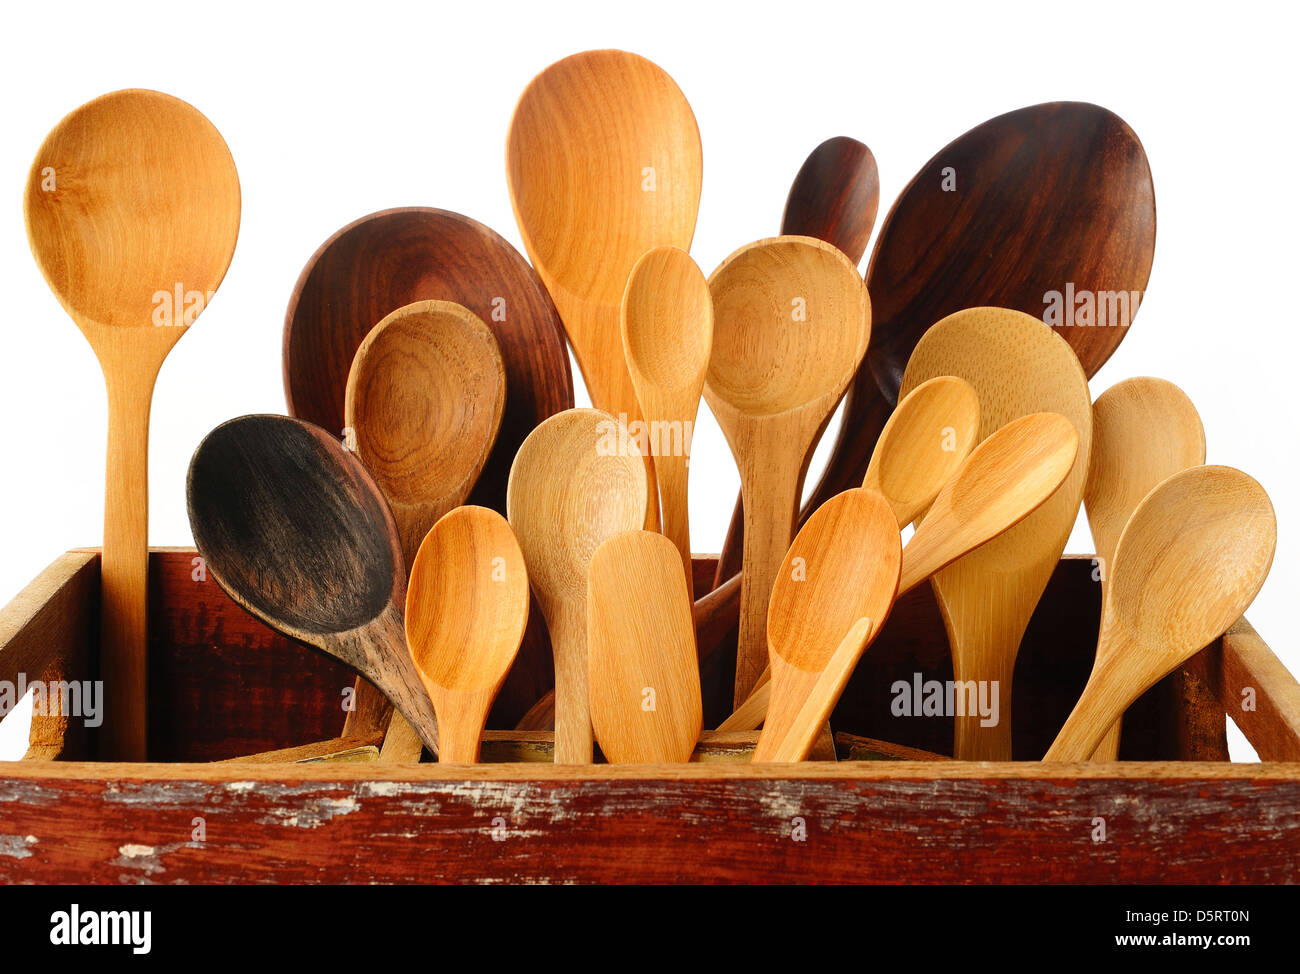 https://c8.alamy.com/compes/d5rt0n/coleccion-de-utensilios-de-cocina-de-madera-en-caja-de-madera-d5rt0n.jpg